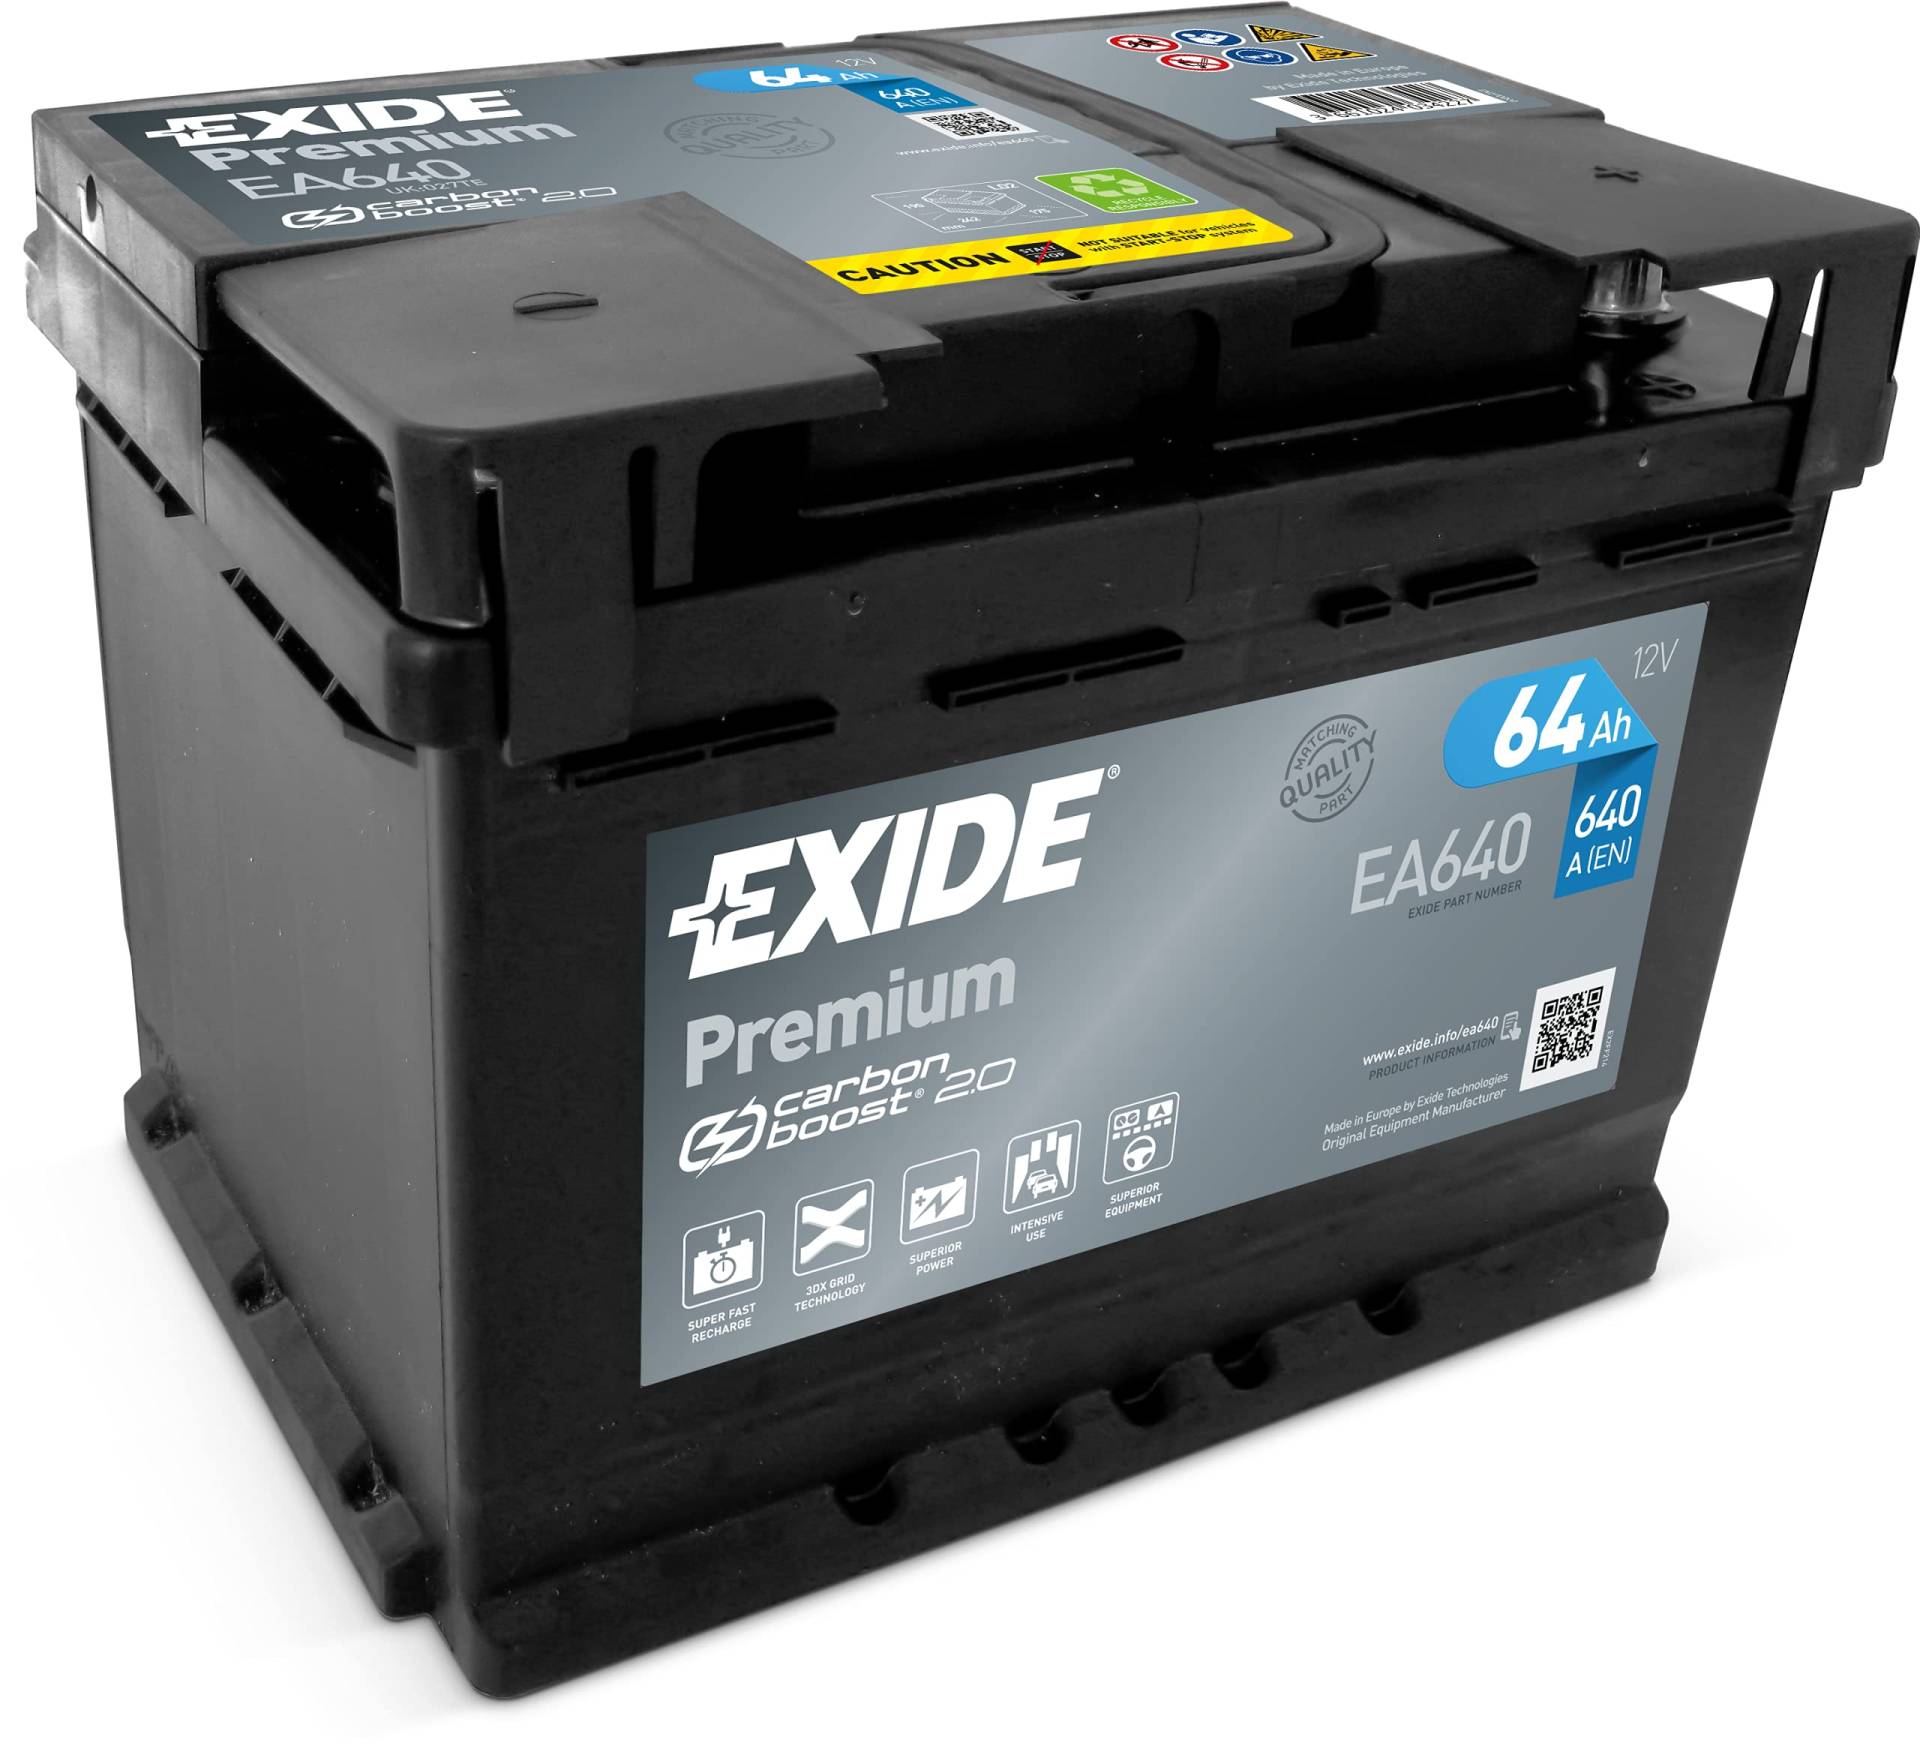 Exide EA640 Premium Carbon Boost Autobatterie 12V 640A 64Ah, lead acid von Exide